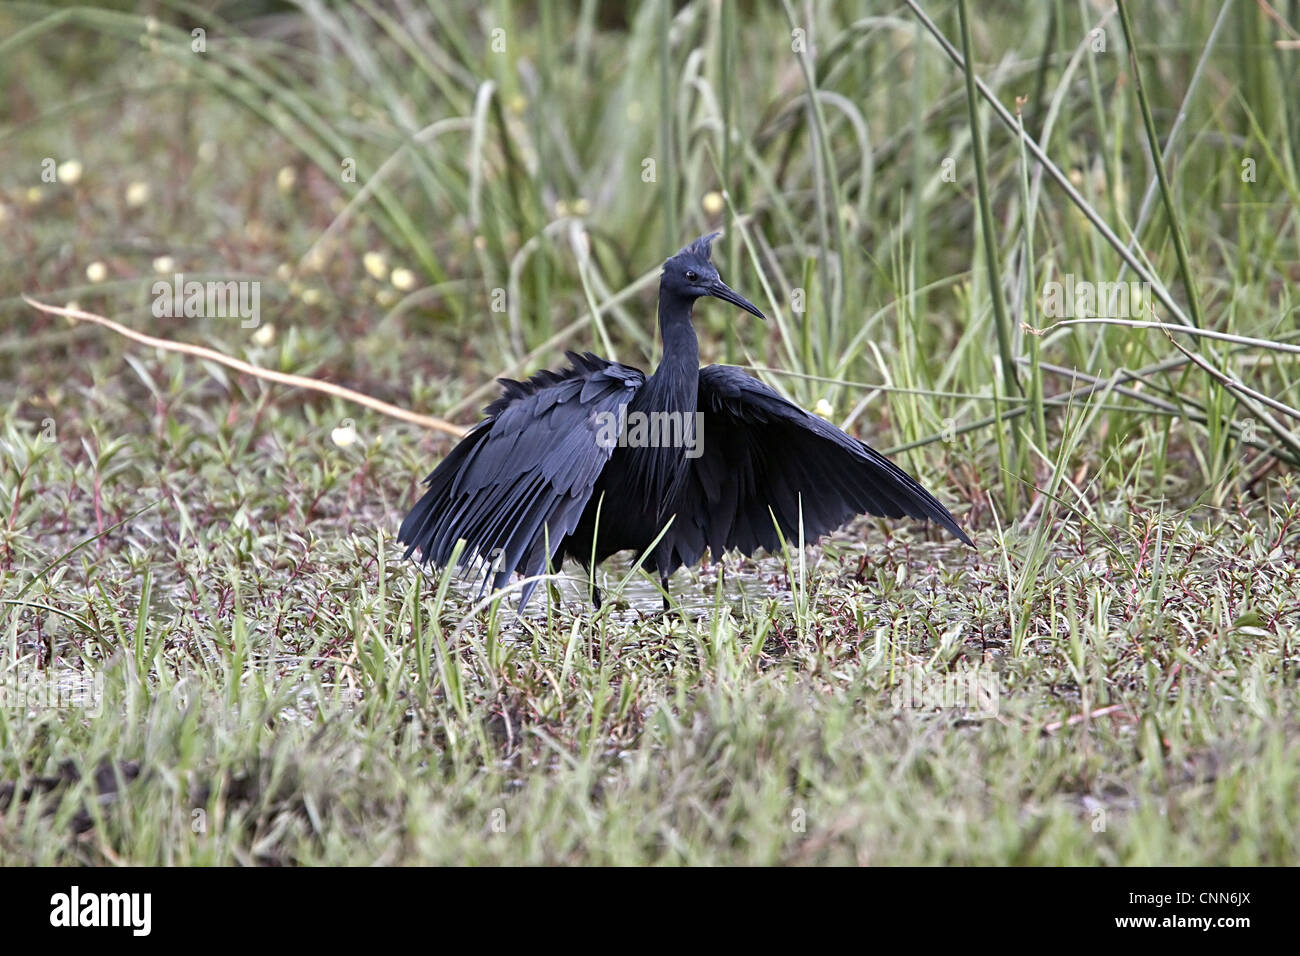 Il nero Heron interessante metodo di caccia denominato tettoia # di alimentazione utilizza le ali come ombrello utilizza ombra crea per attirare il pesce. Foto Stock